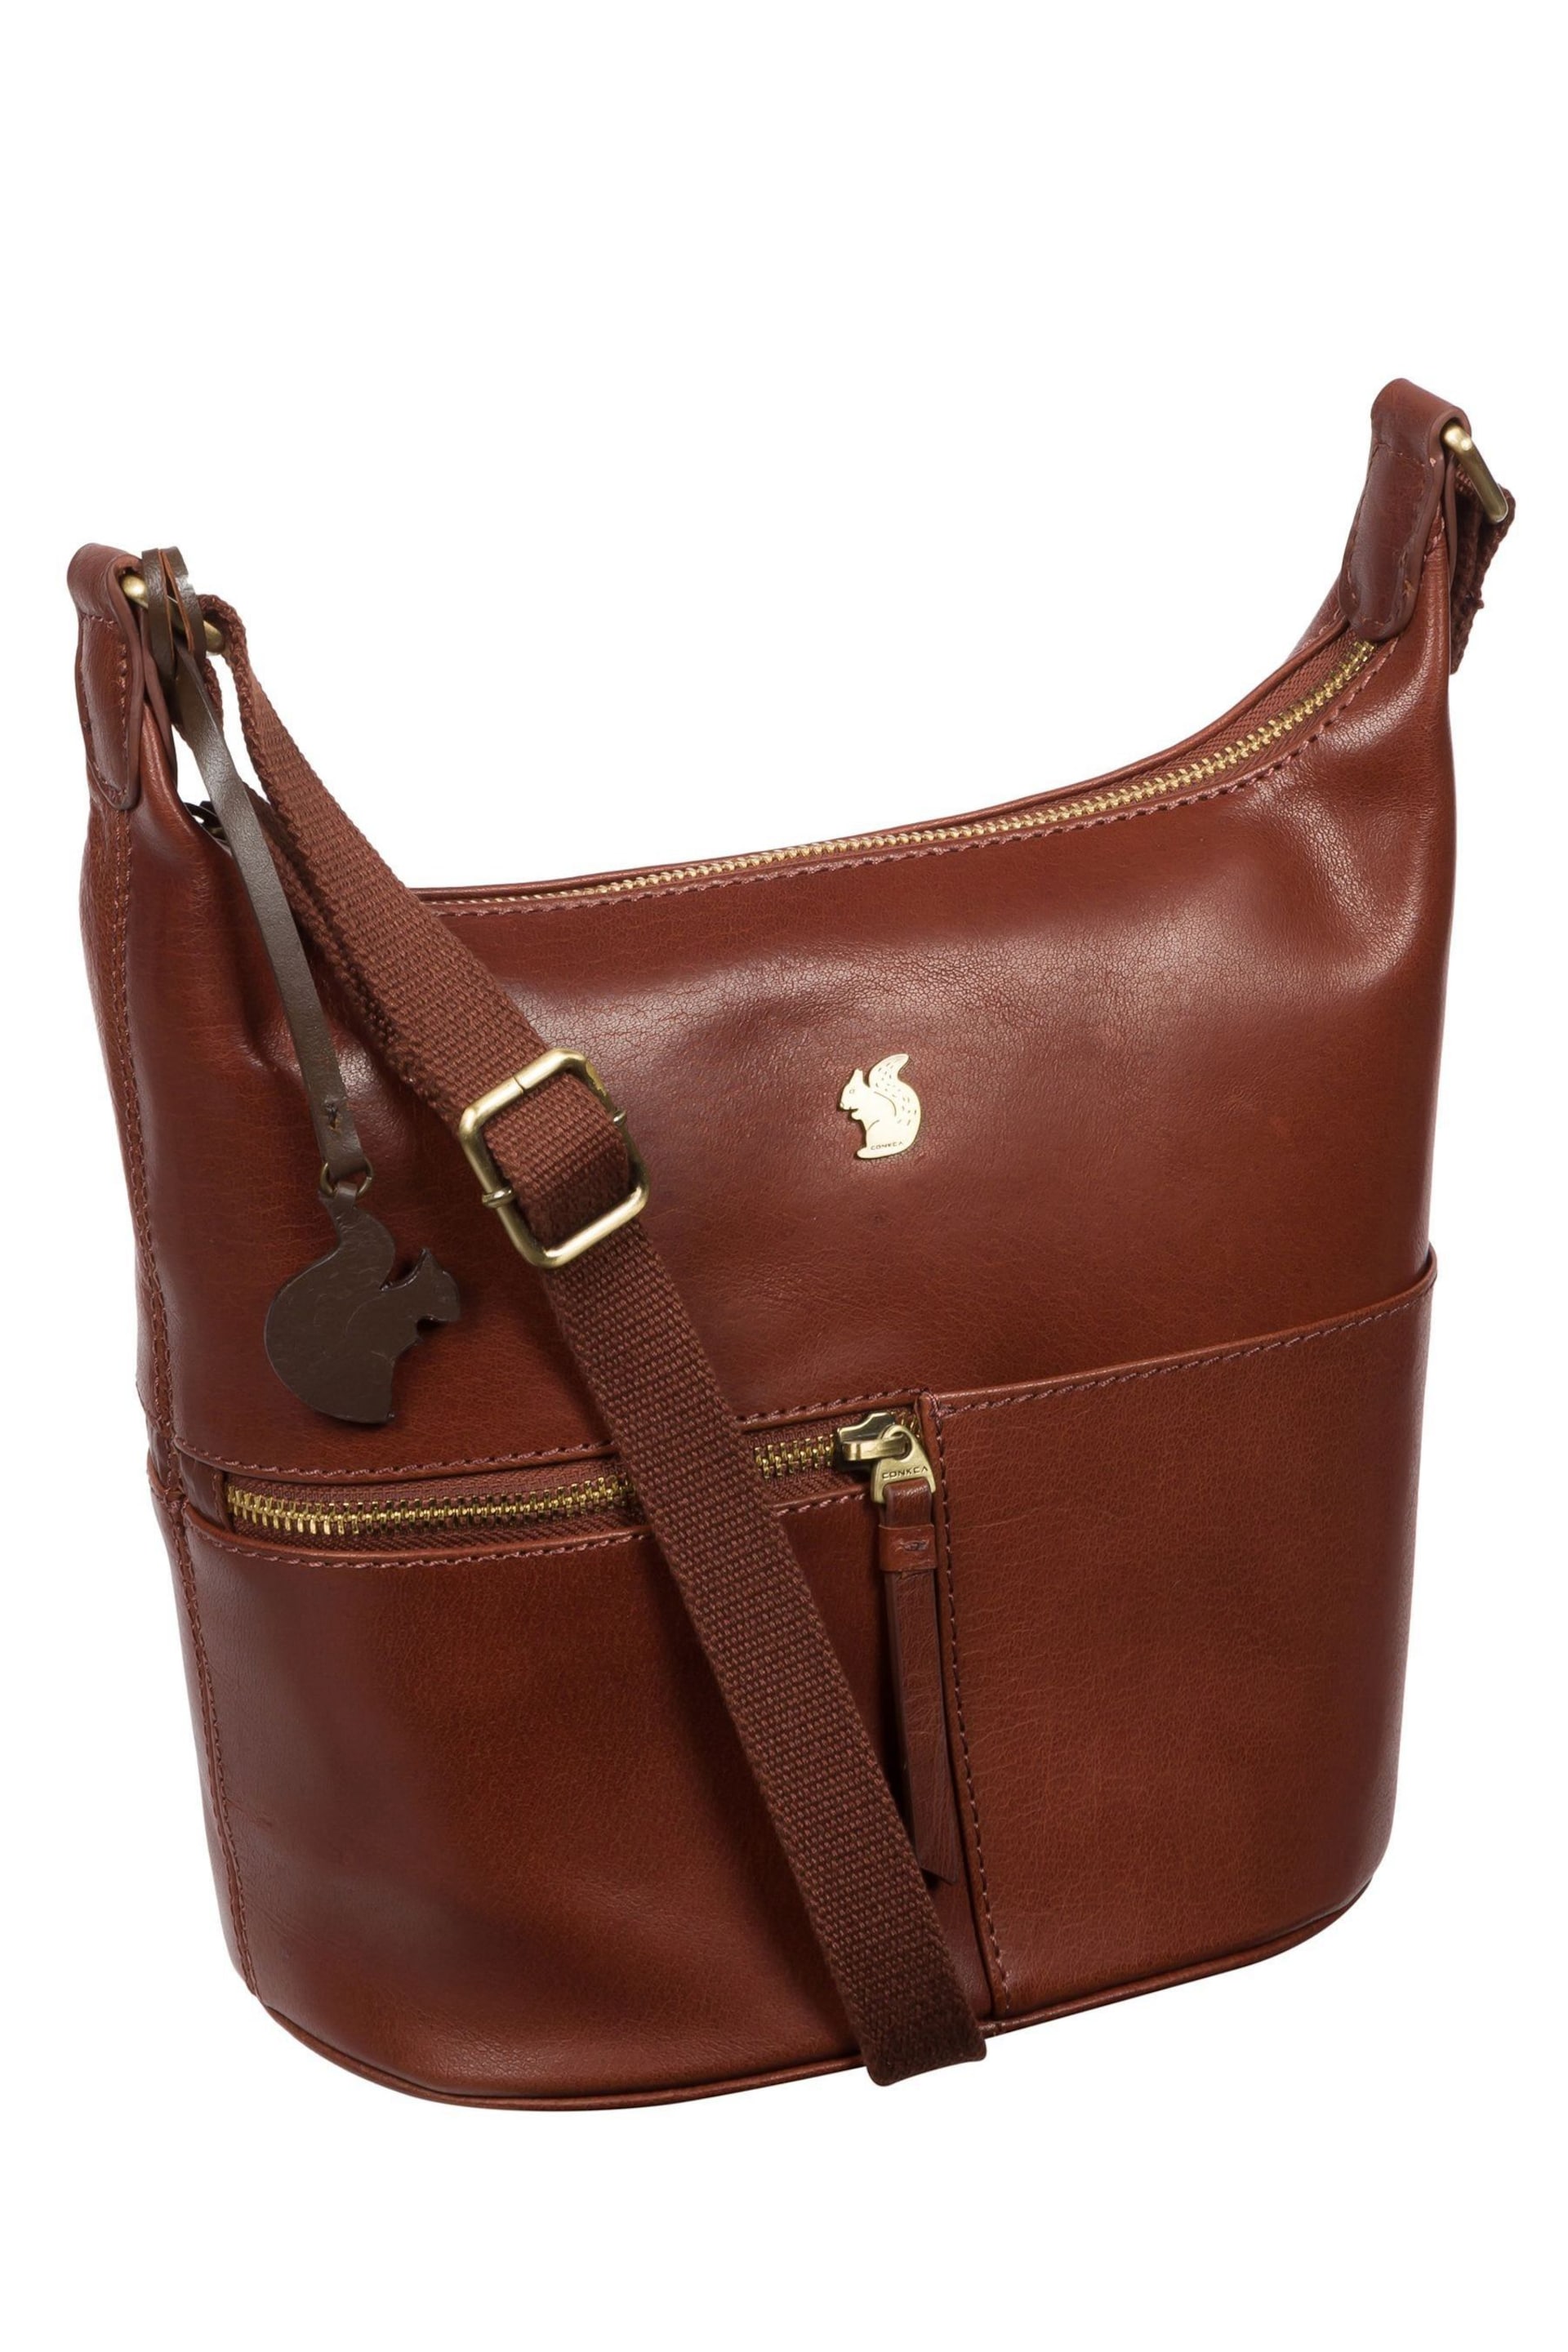 Conkca Little Kristin Leather Shoulder Bag - Image 5 of 6